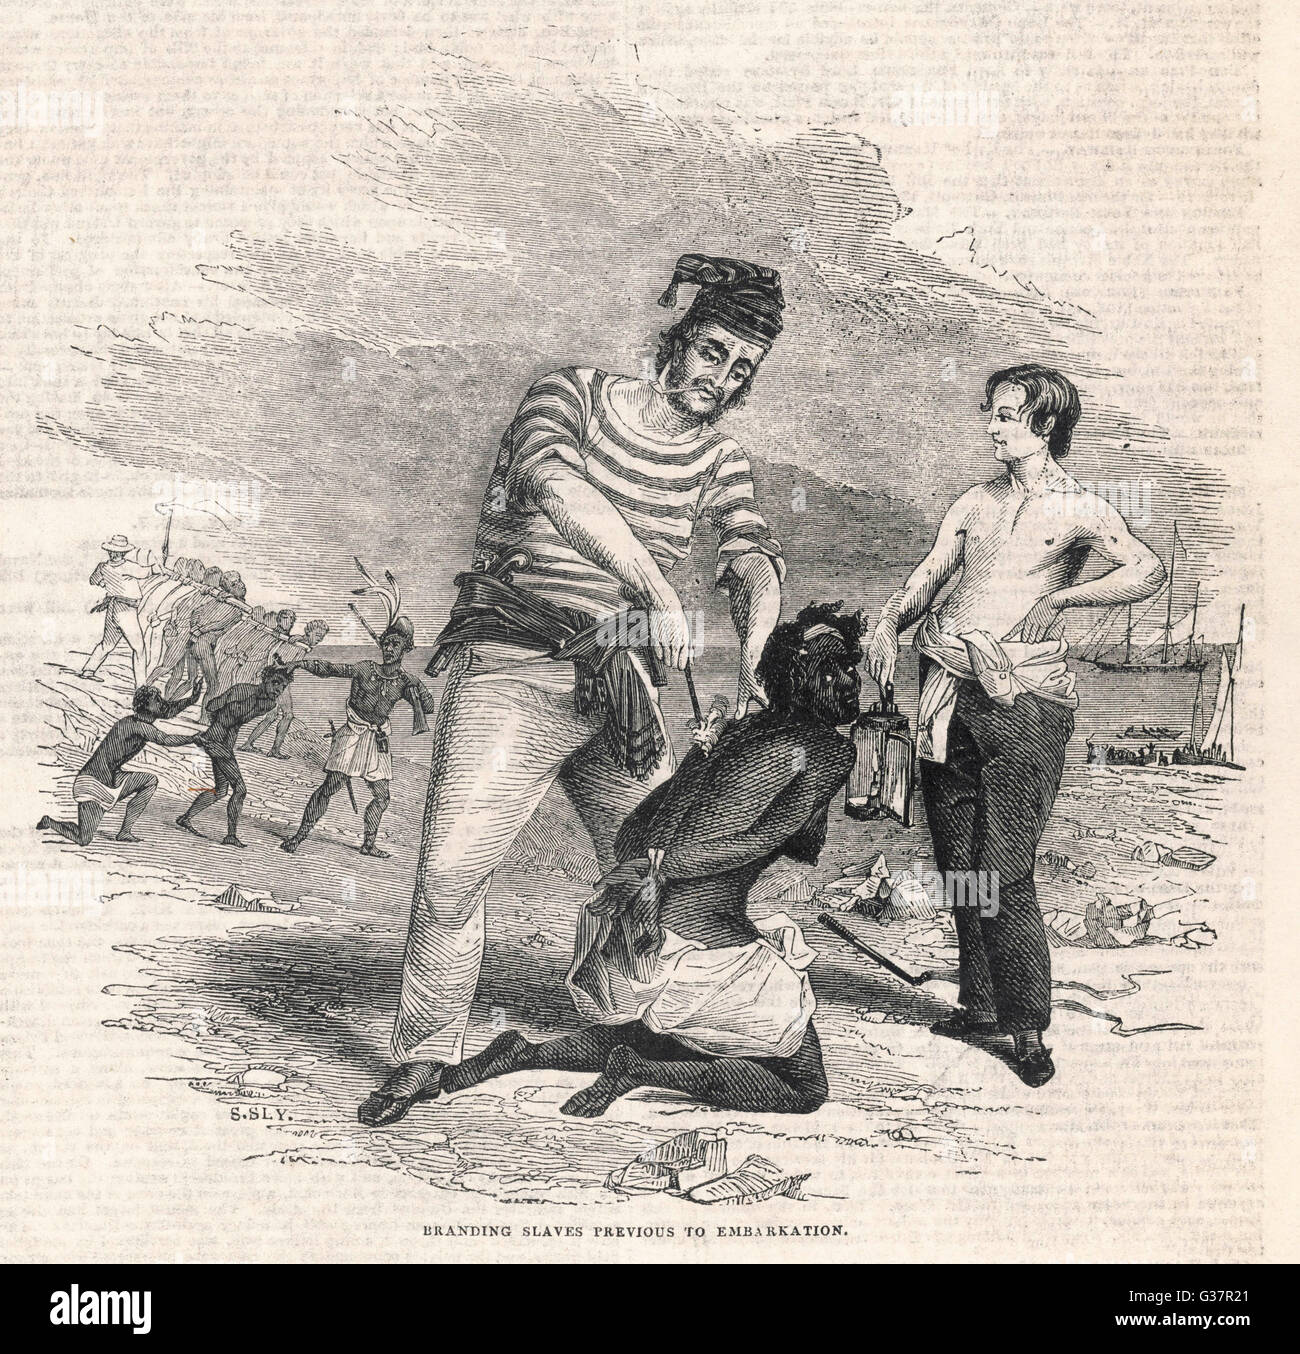 westafrika-sklaven-gebrandmarkt-vor-der-auslieferung-die-americas-datum-1845-g37r21.jpg